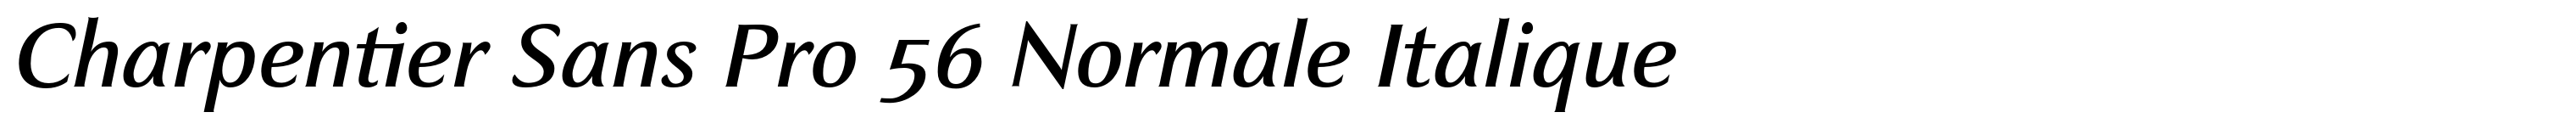 Charpentier Sans Pro 56 Normale Italique